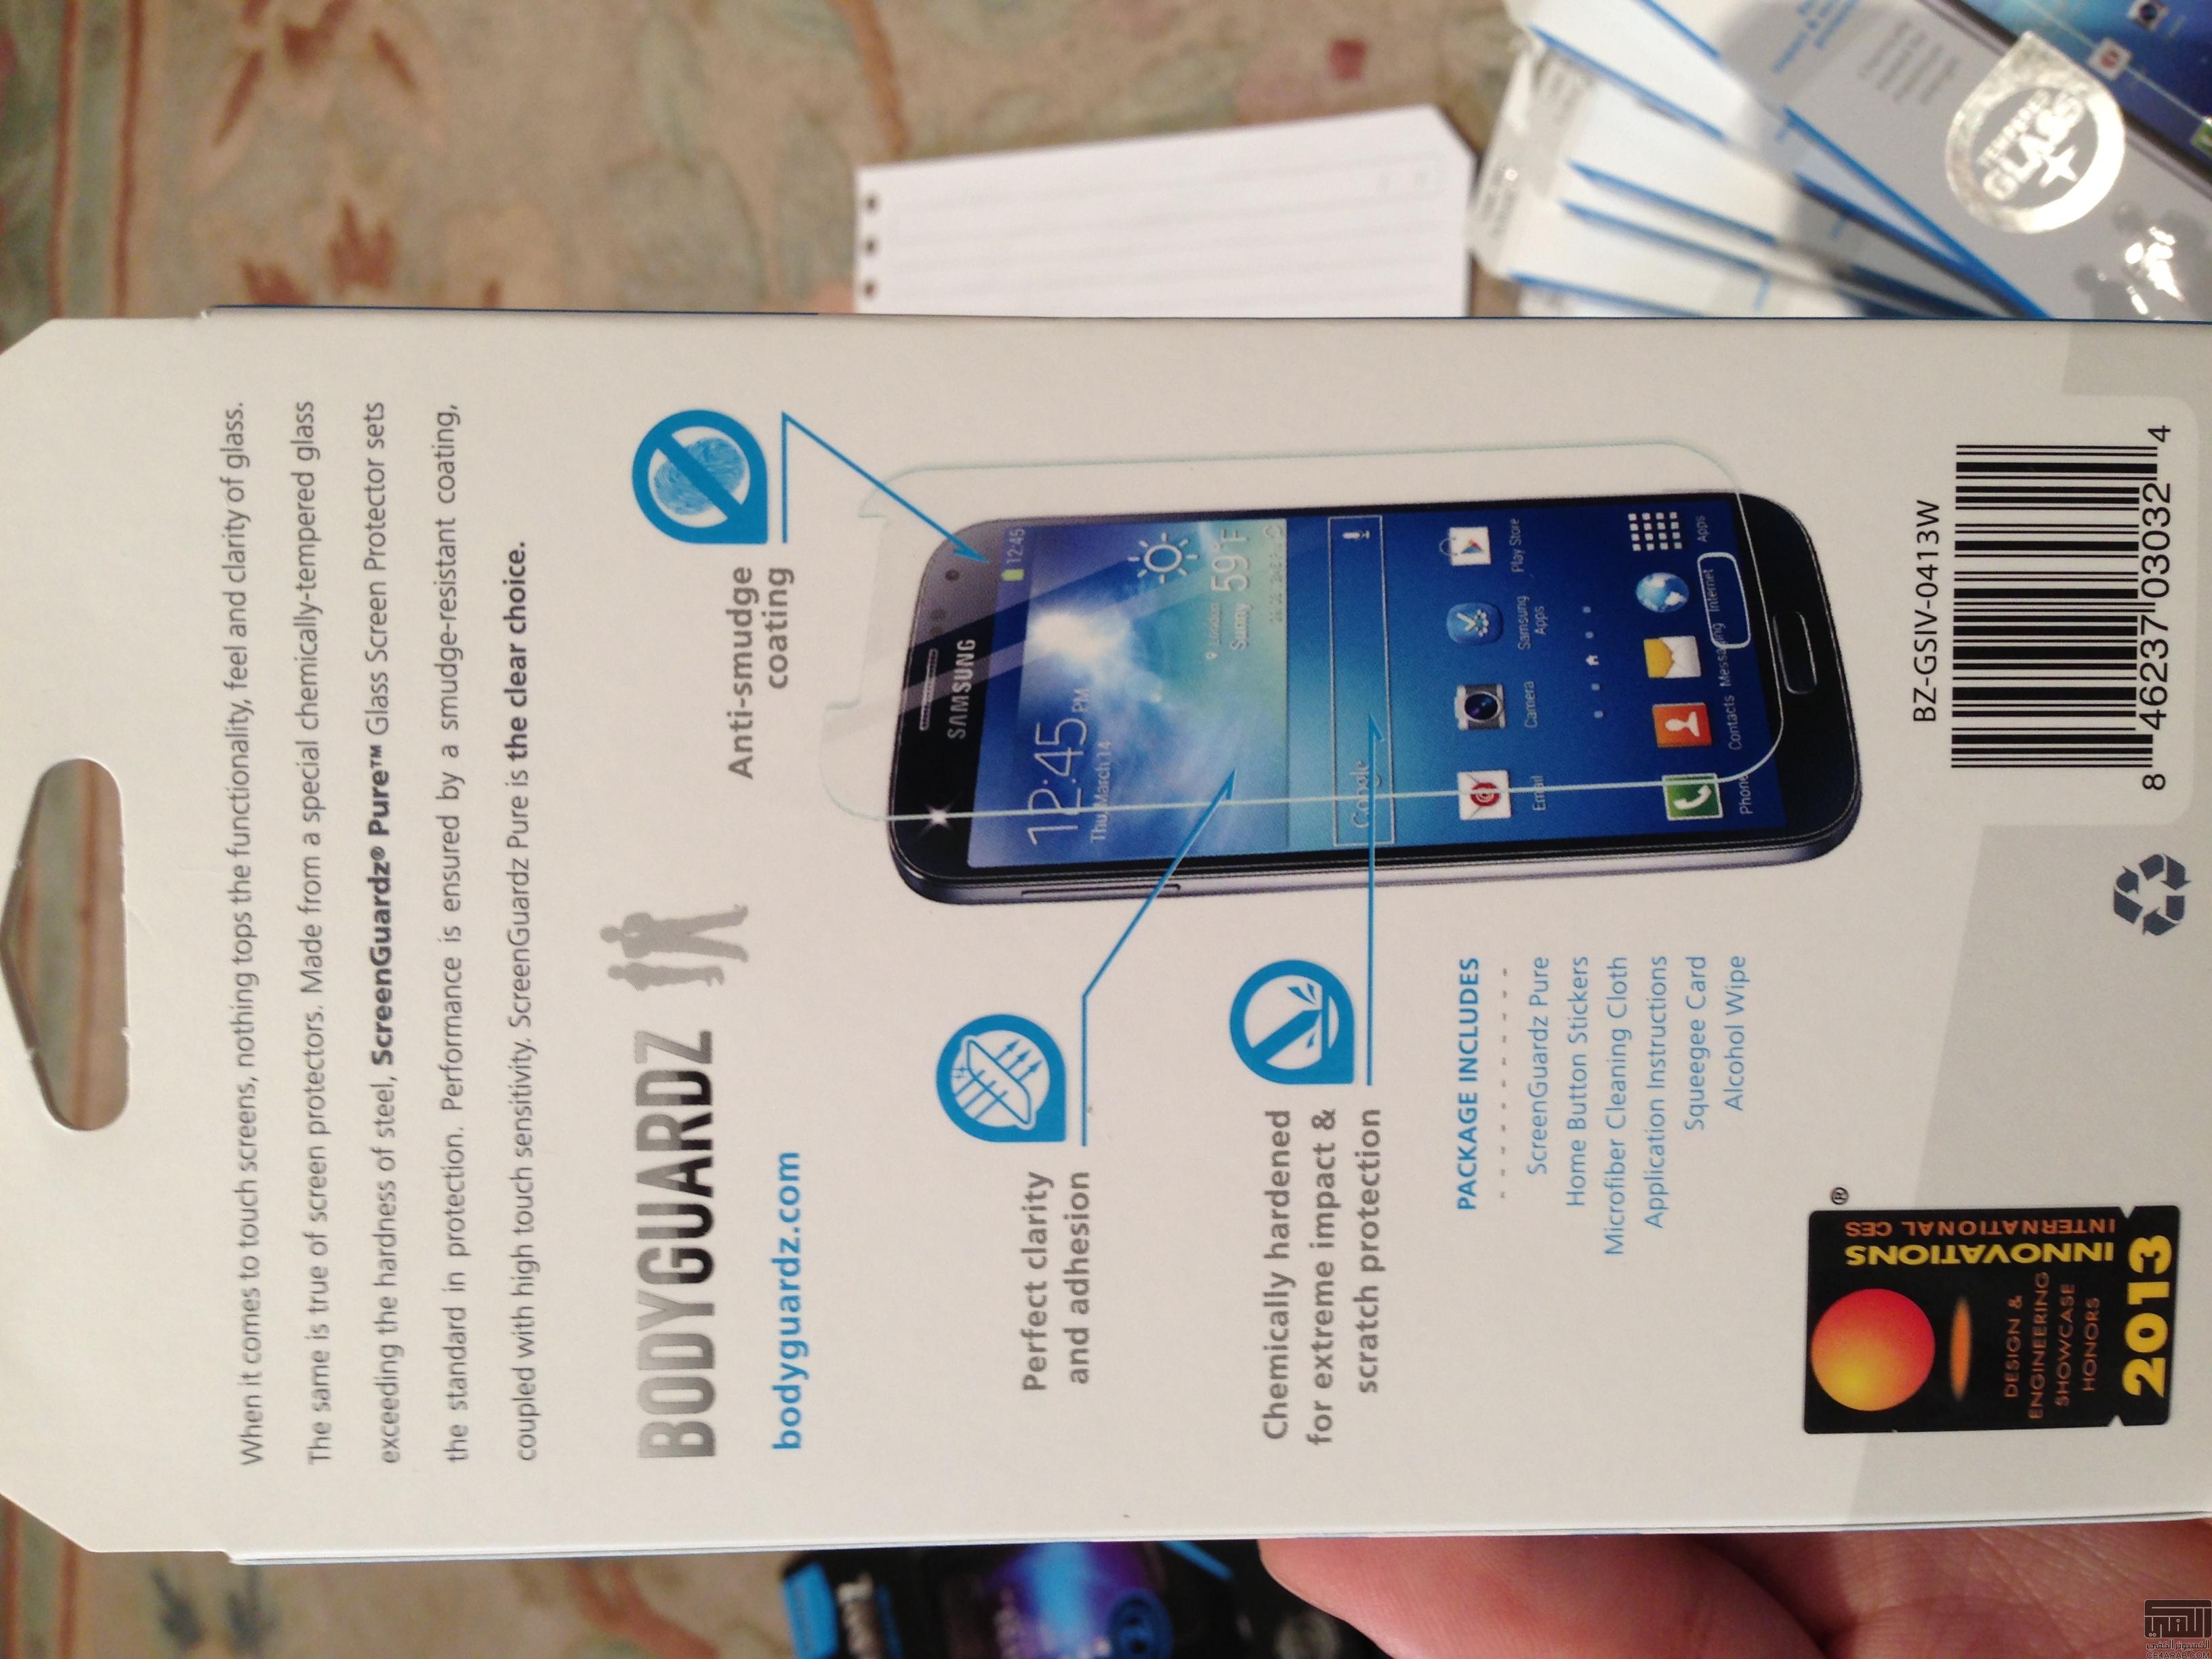 أفضل حماية بأفضل سعر، " وصل حديثاً " : Galaxy S5, HTC M8, Galaxy